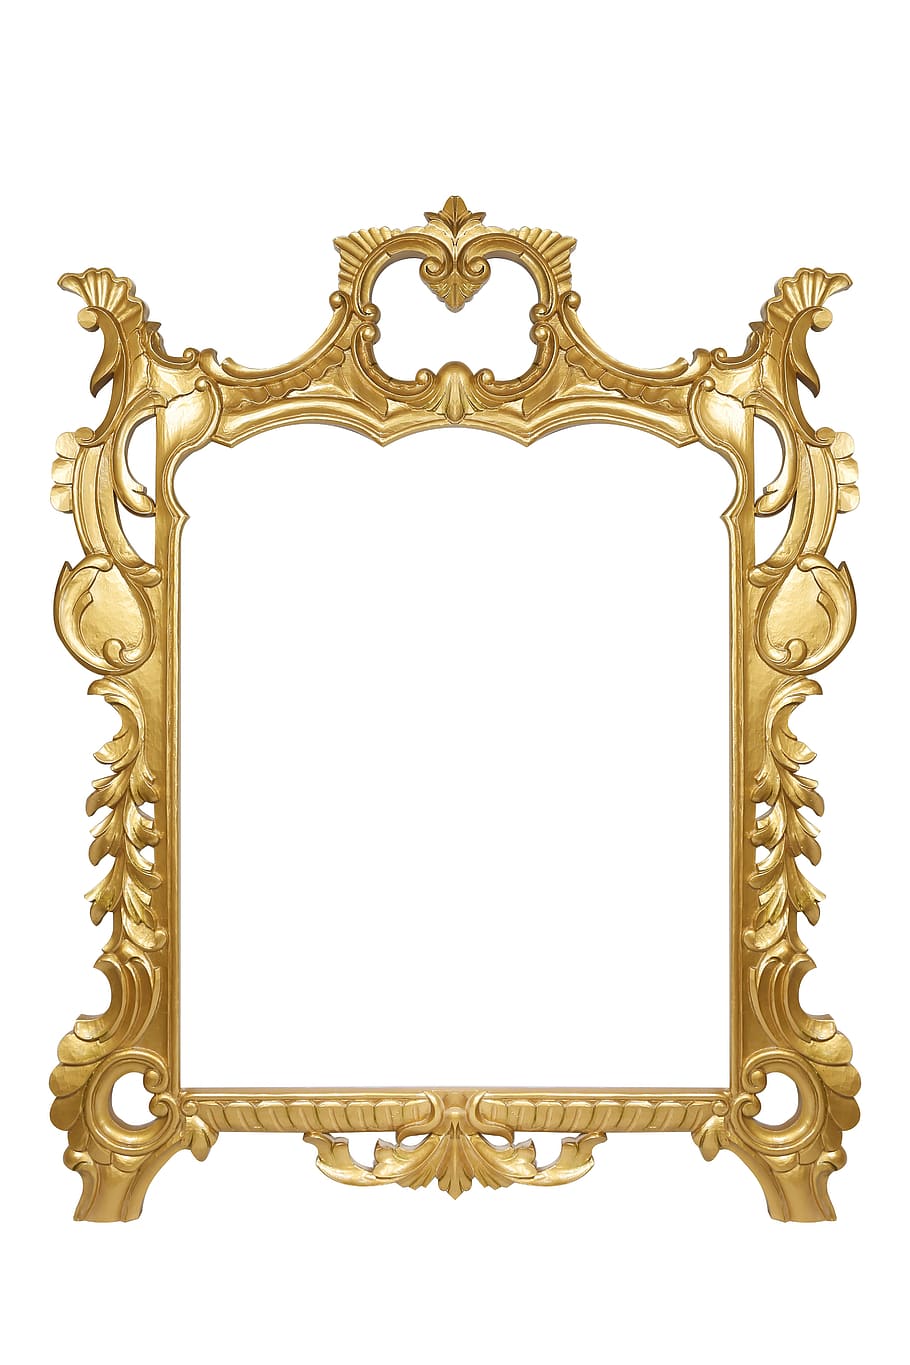 marco, oro, dorado, decorativo, diseño, ornamento, retro, creatividad, interior, fondo blanco